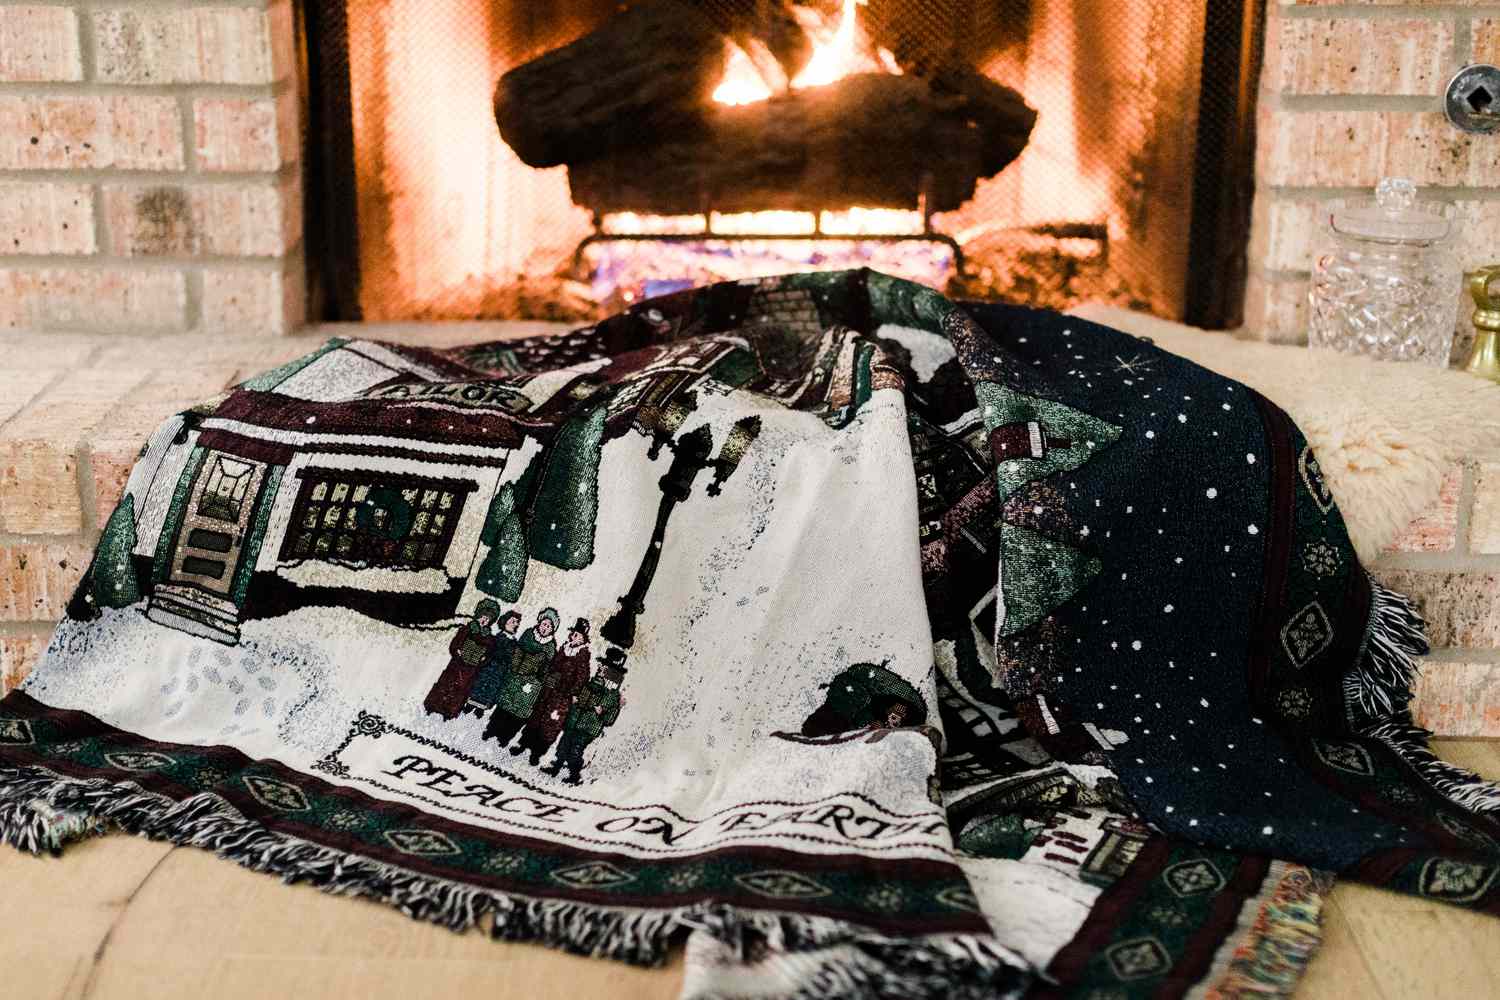 Una alfombra navideña en el suelo frente a una chimenea encendida